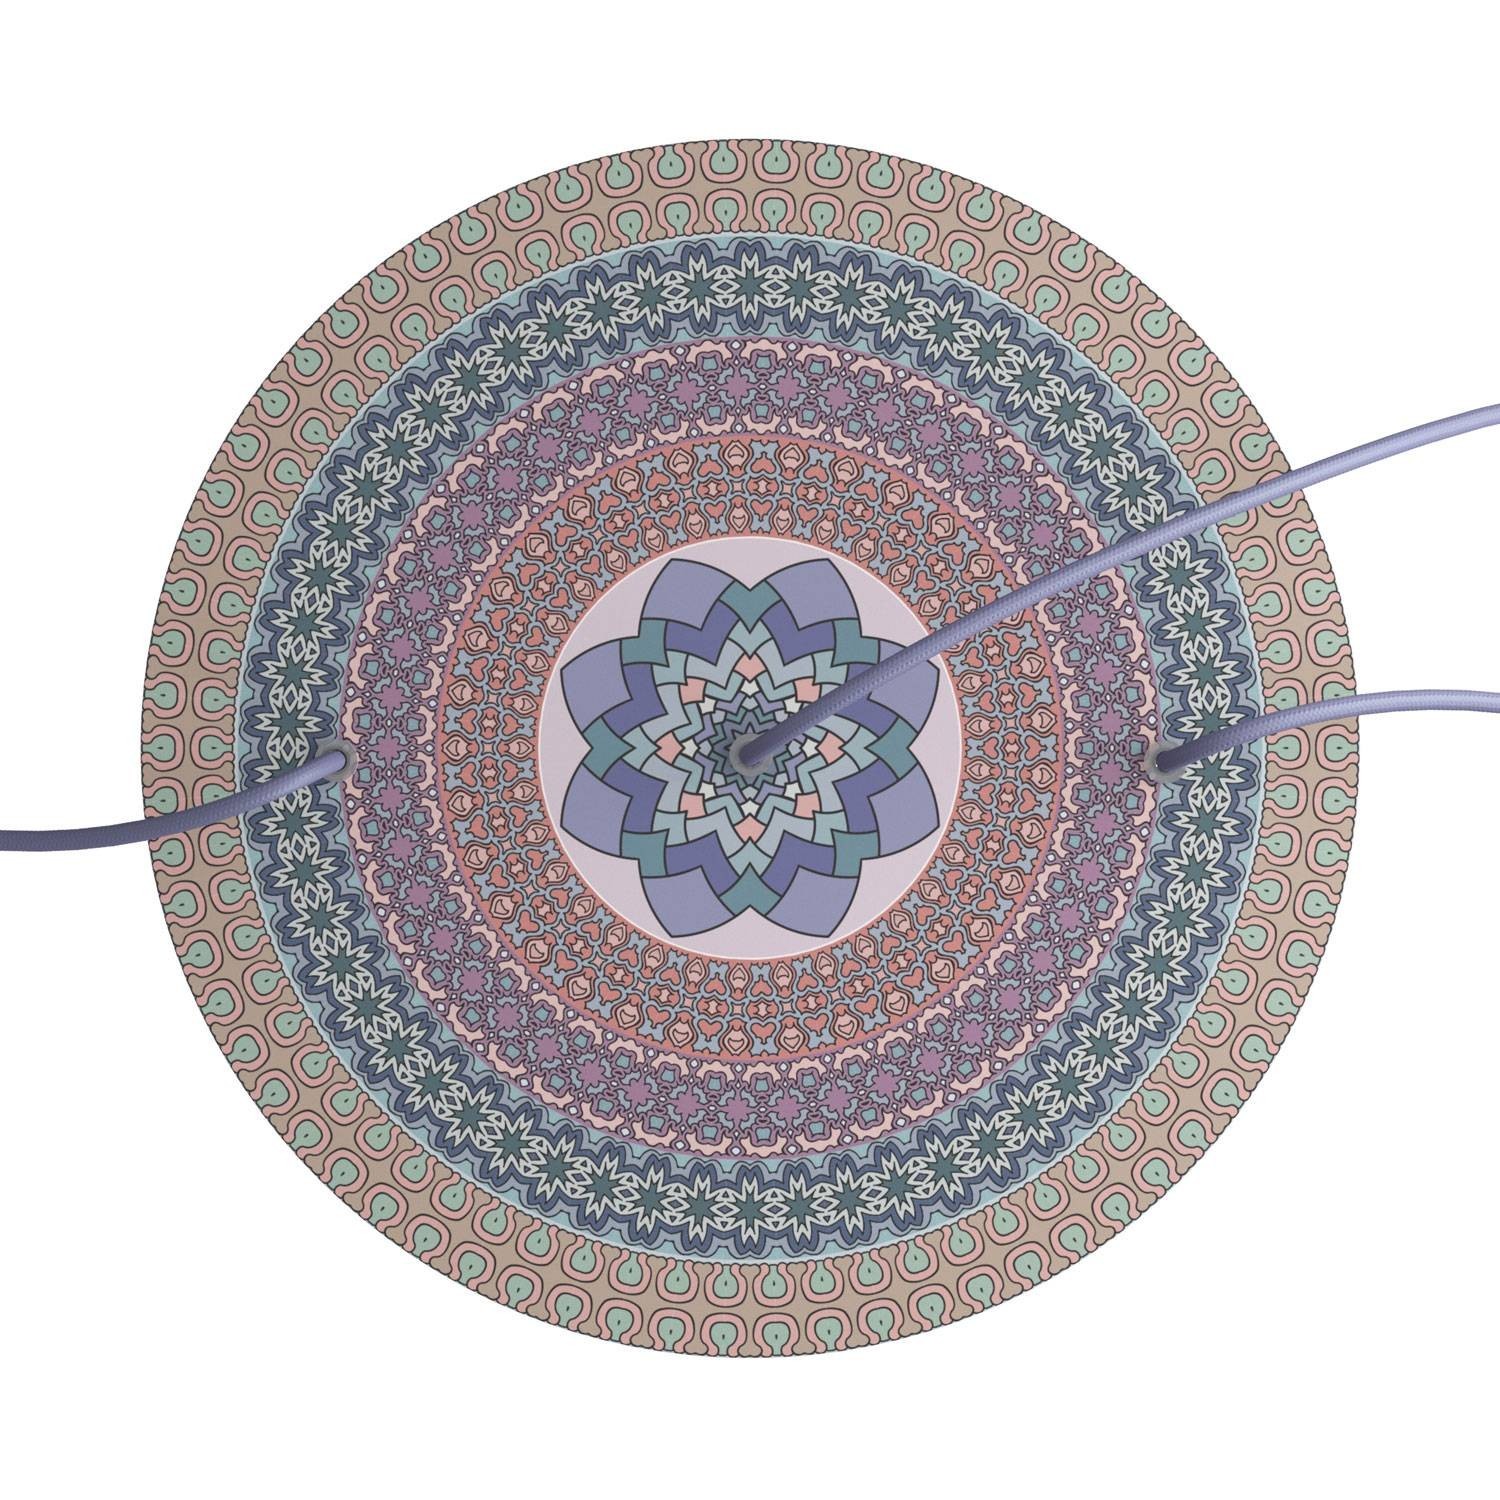 Velika okrugla dekoracija za stropnu rozetu 400 mm - Rose-One sistem s 3 rupe u liniji i 4 bočne rupe - PROMO